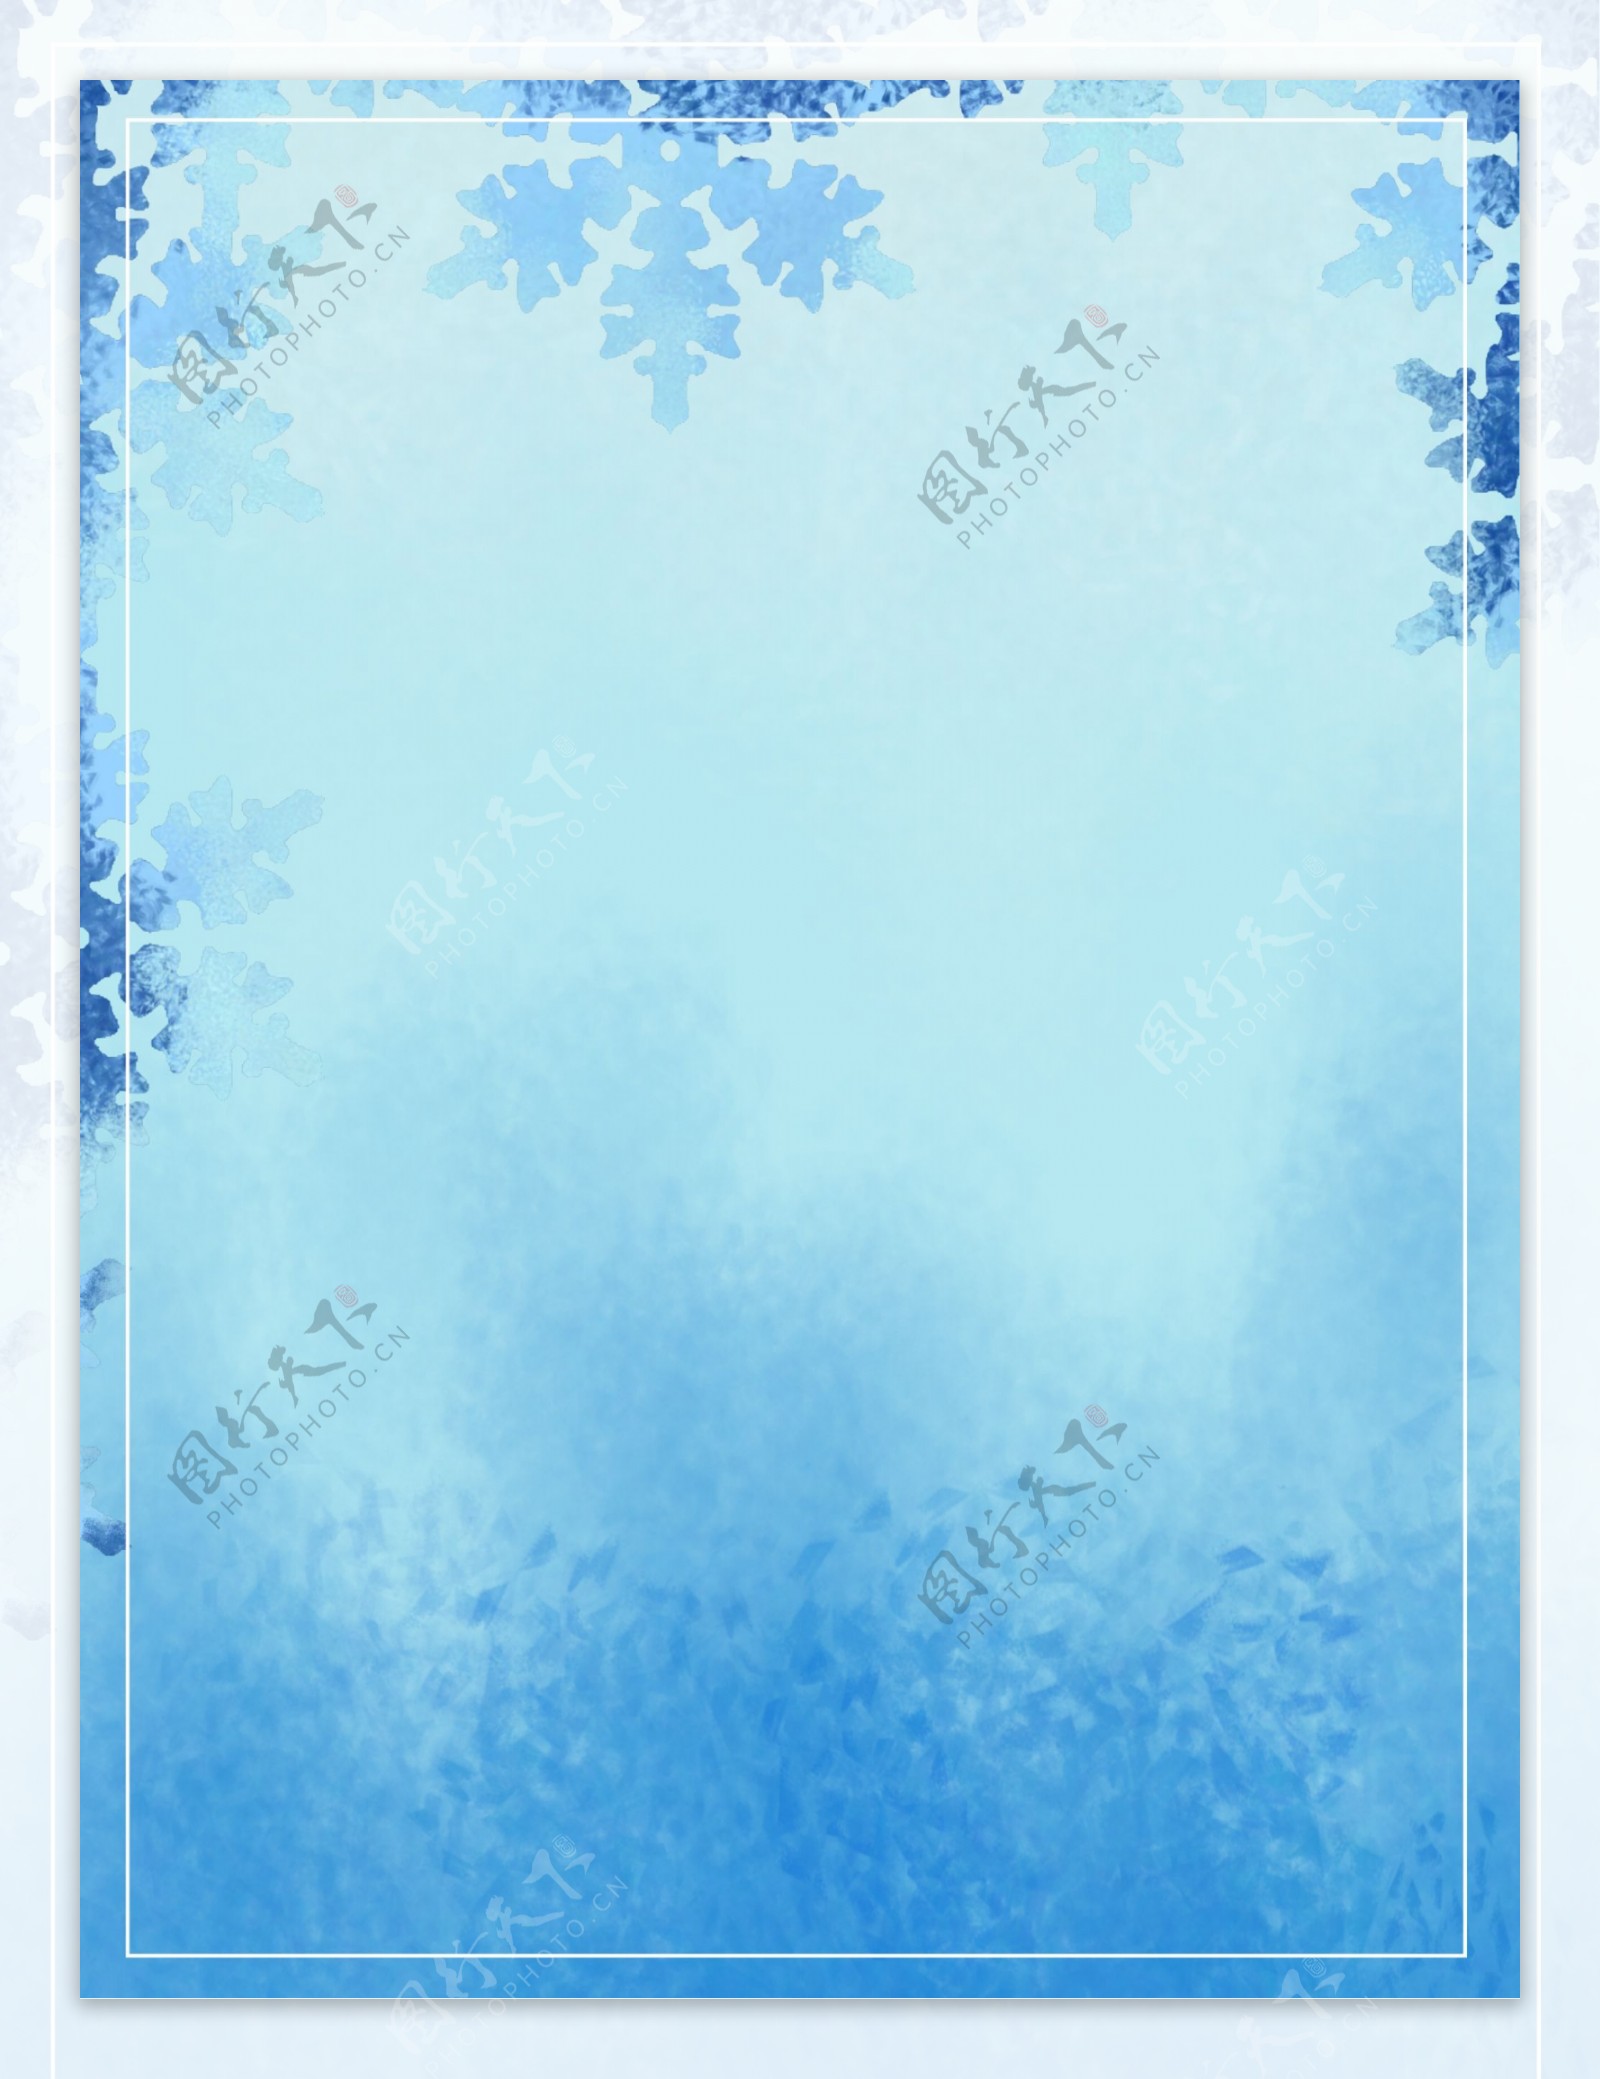 手绘蓝色雪花冬至节气背景素材